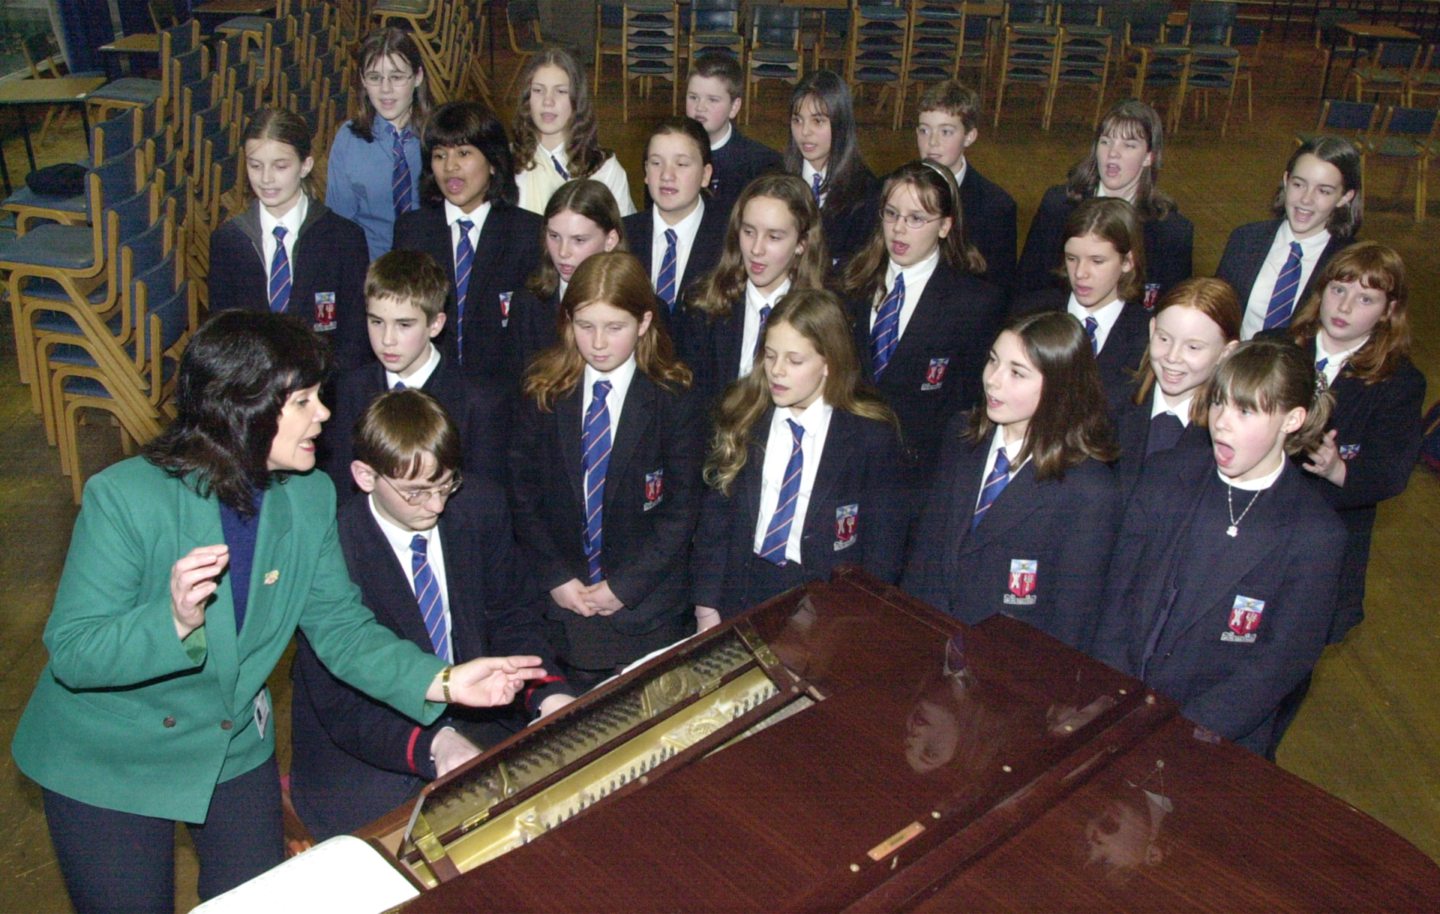 Aberdeen Grammar School Choir reheard for the Evening Express Carol Concert in 2000.